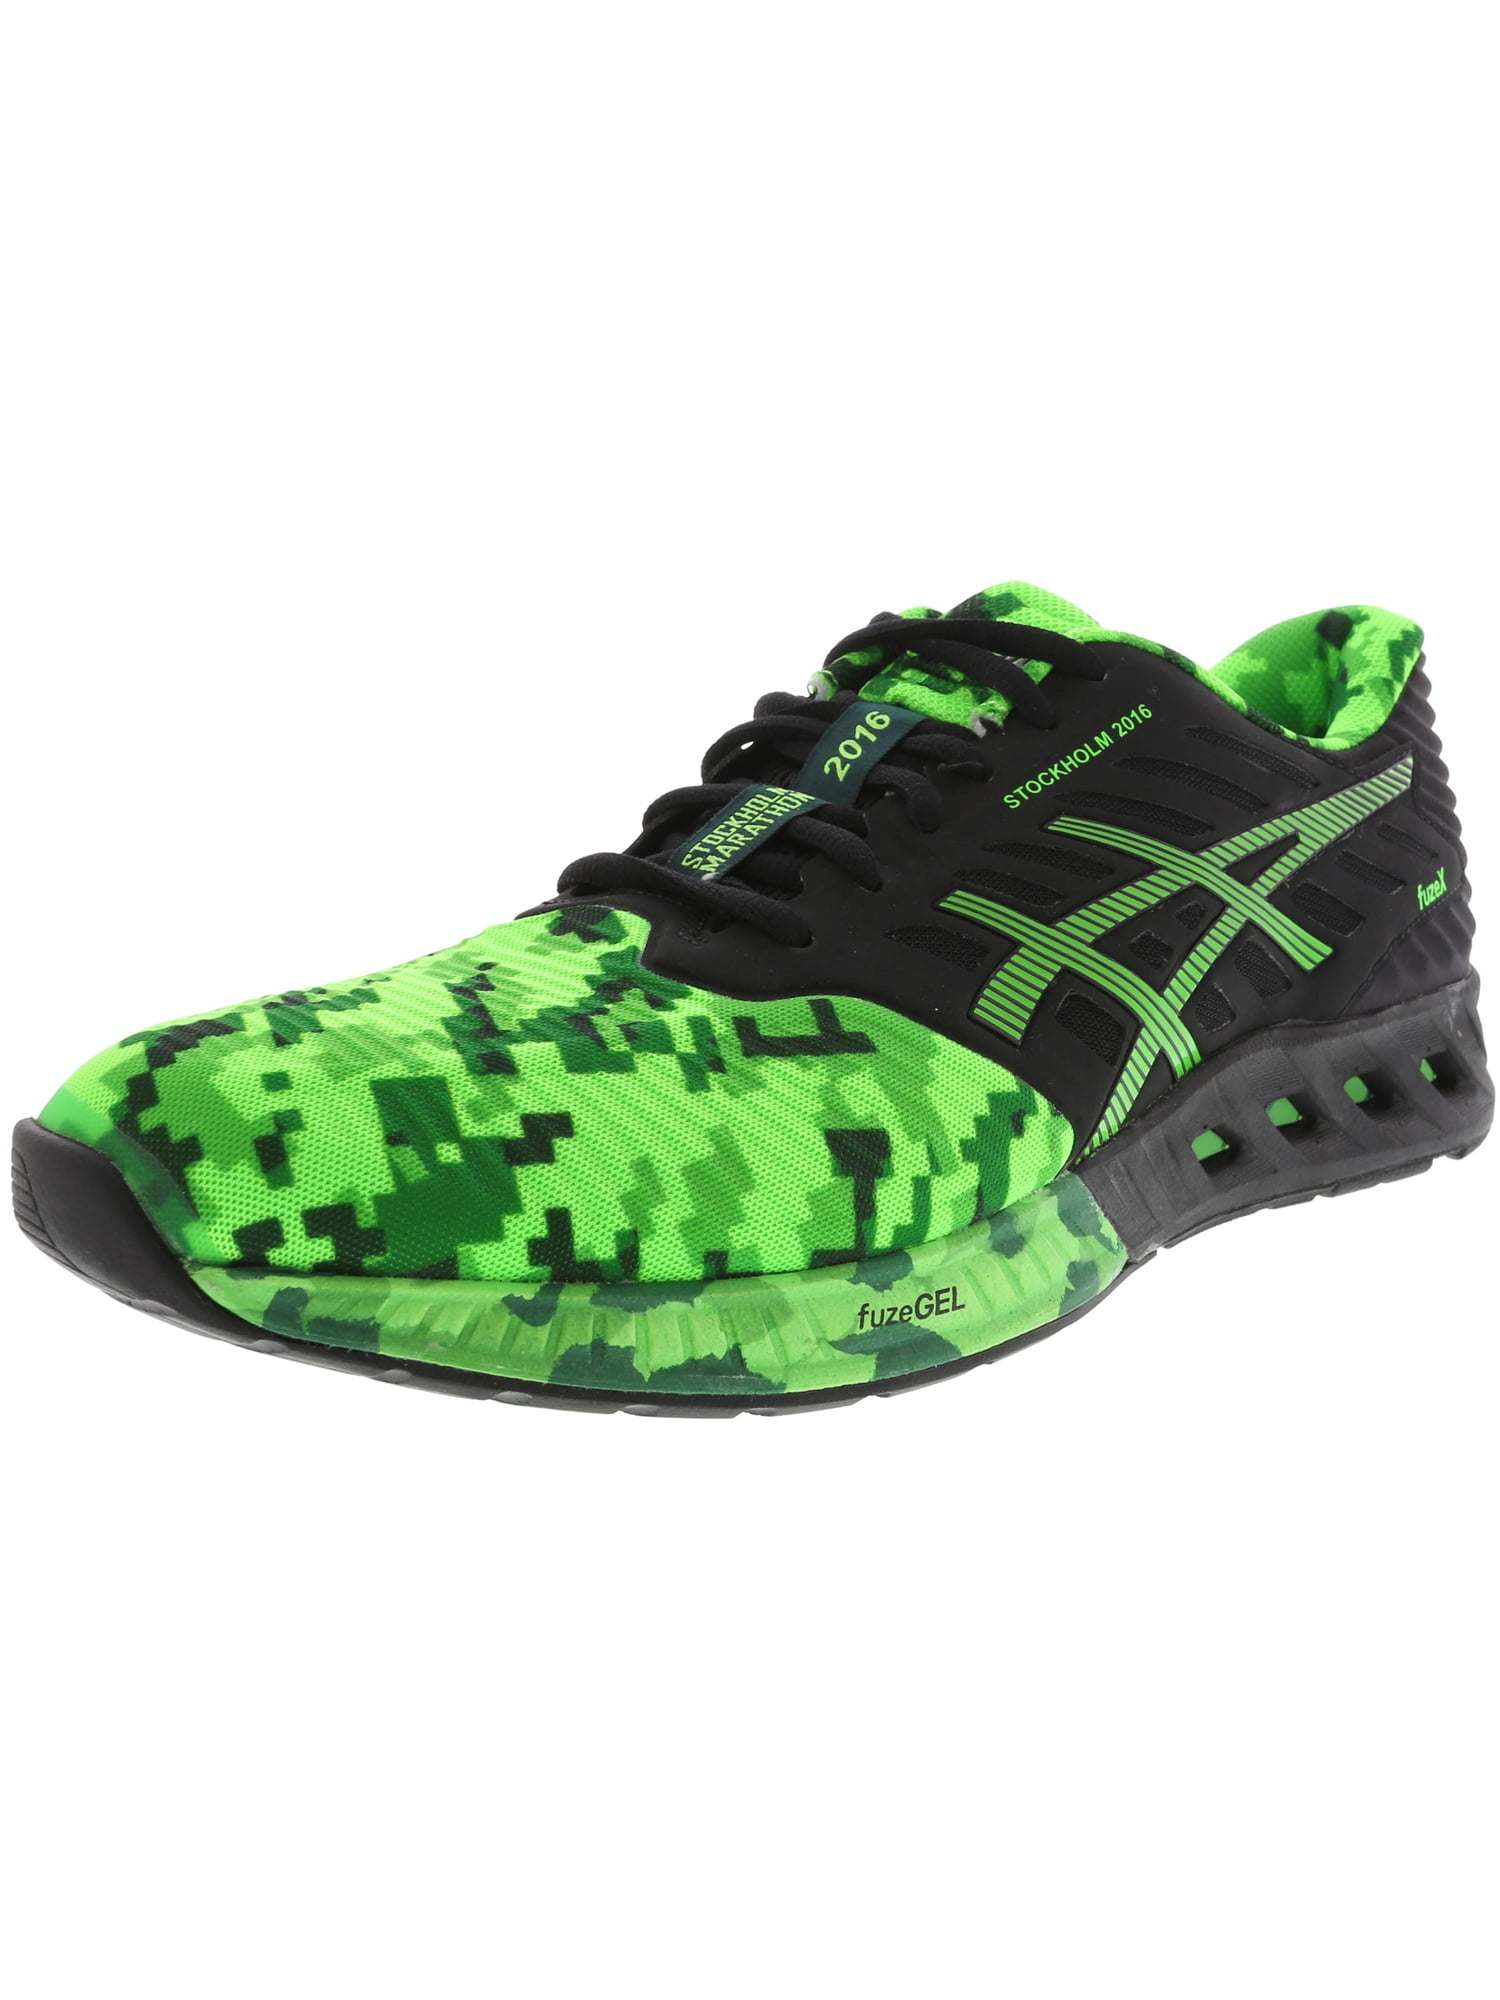 proporcionar Arrugas la carretera Asics Men's Fuzex Black / Green Gekko Amazon Ankle-High Running Shoe - 8.5M  - Walmart.com